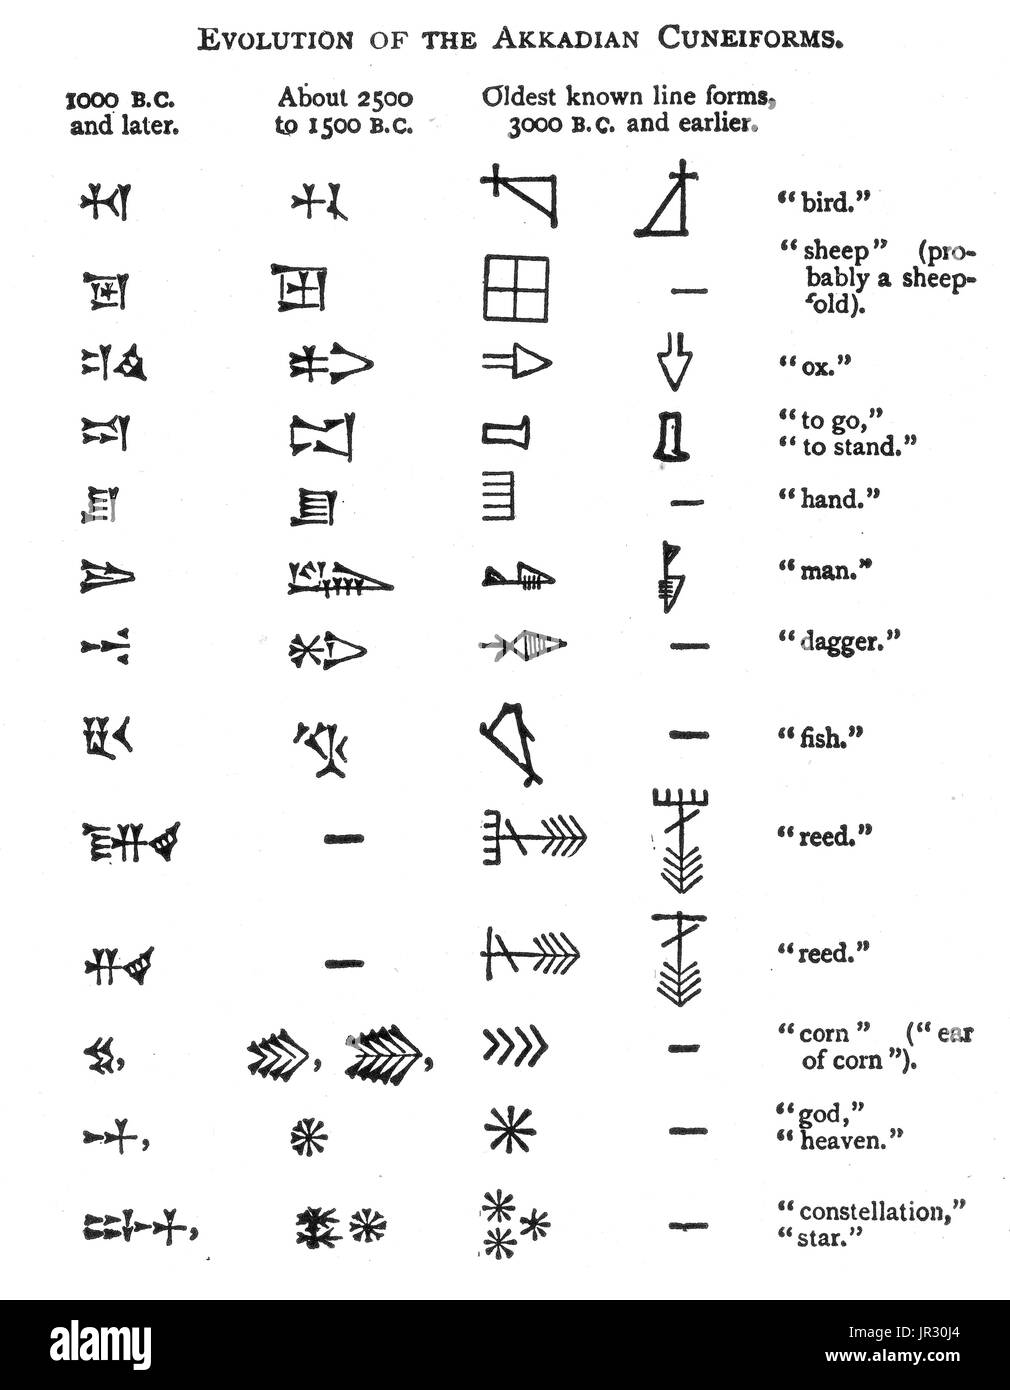 Évolution de l'akkadien cunéiformes Banque D'Images